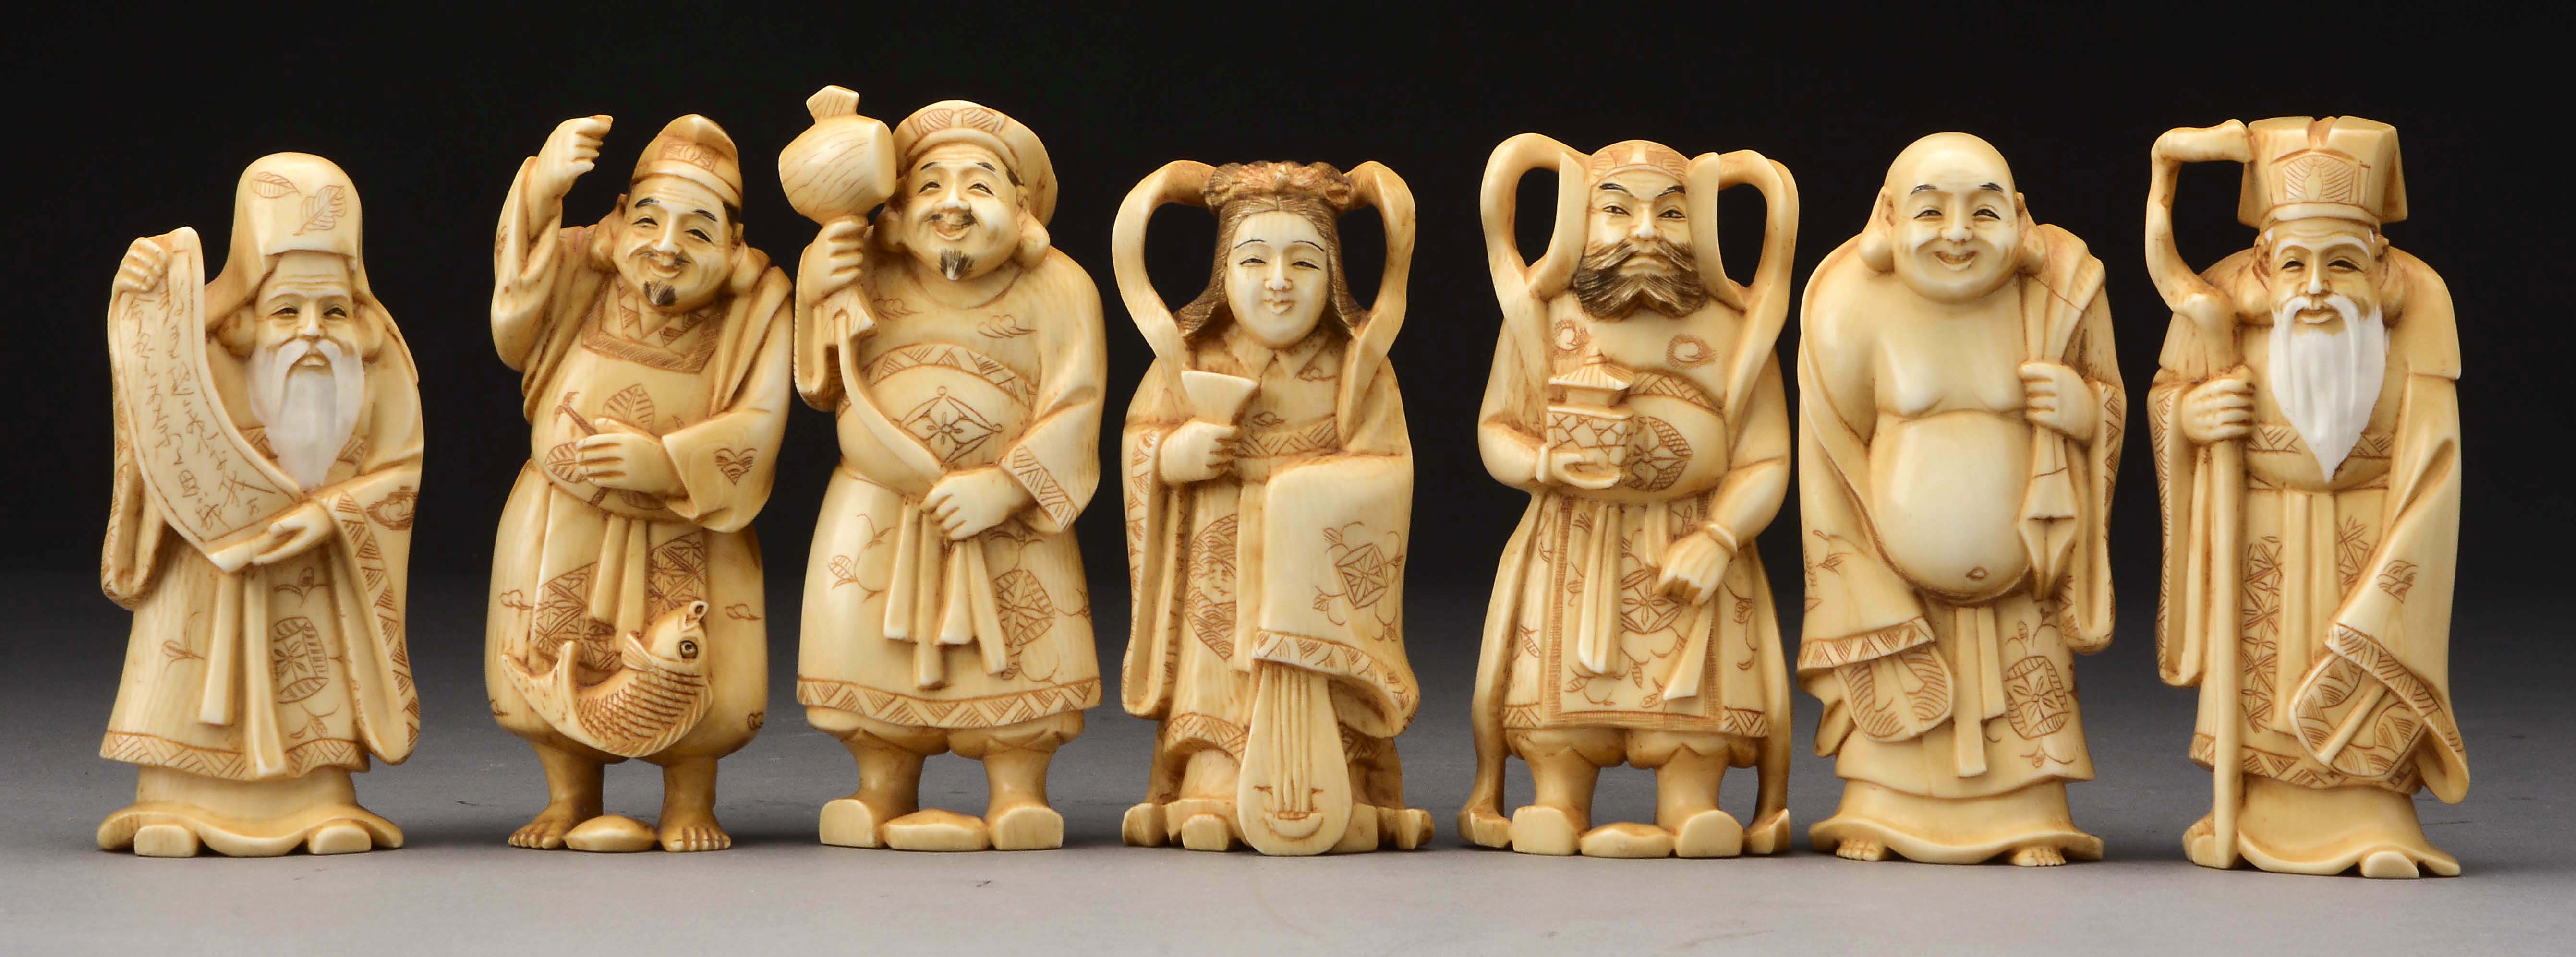 Ситифукудзин семь богов счастья